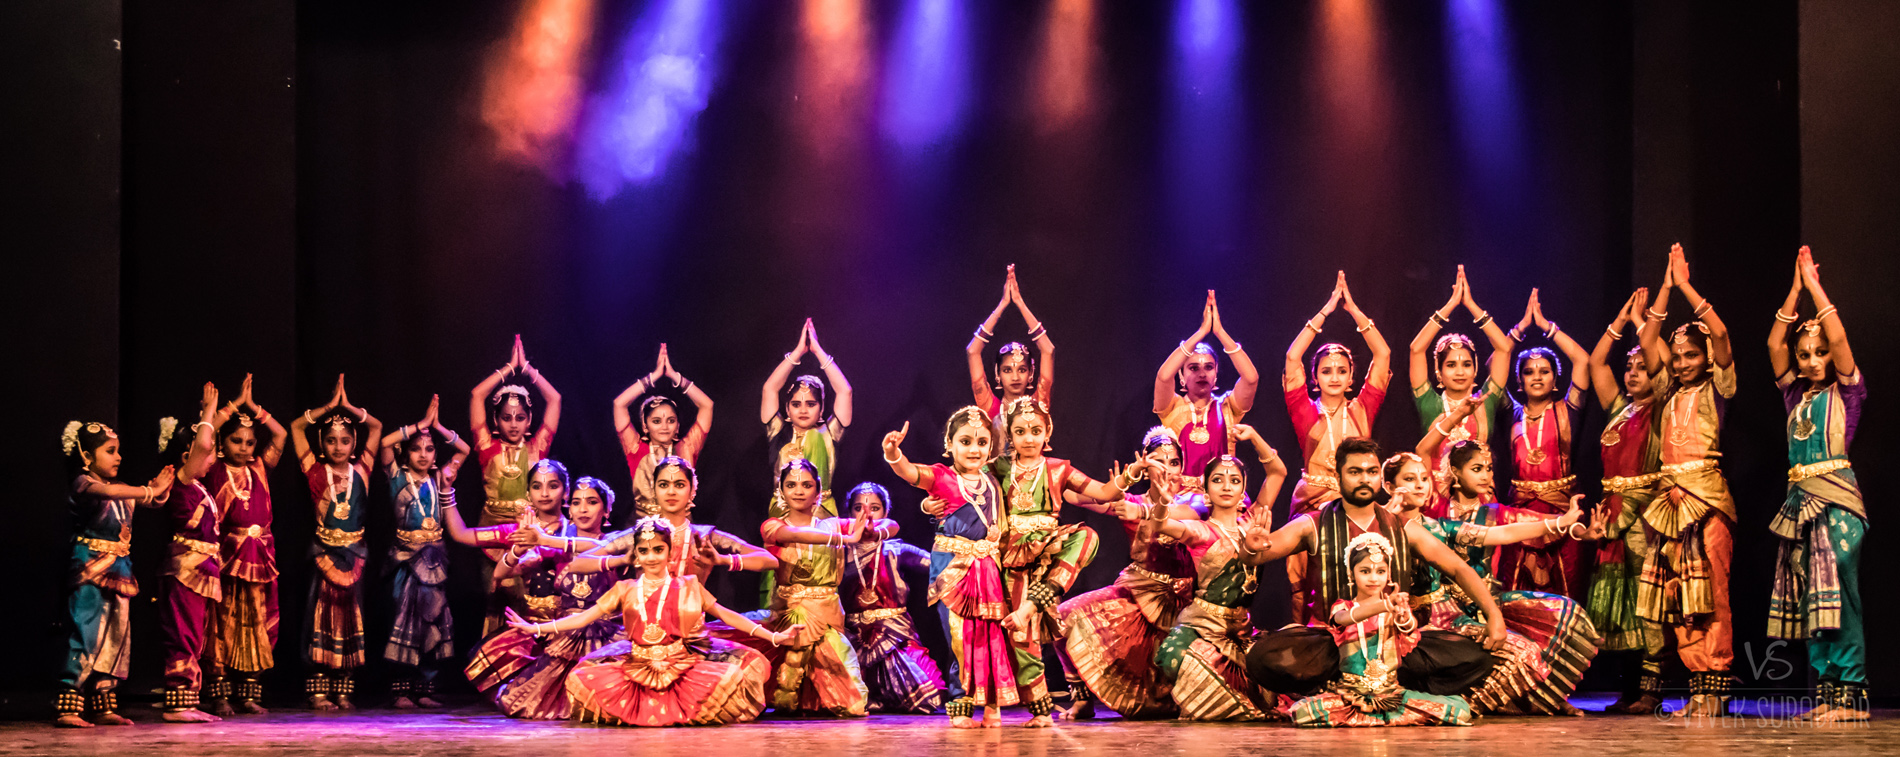 नृत्यामुळे जीवनाला लय ताल प्राप्त होते :सौ. दीपा श्रीराम लागू